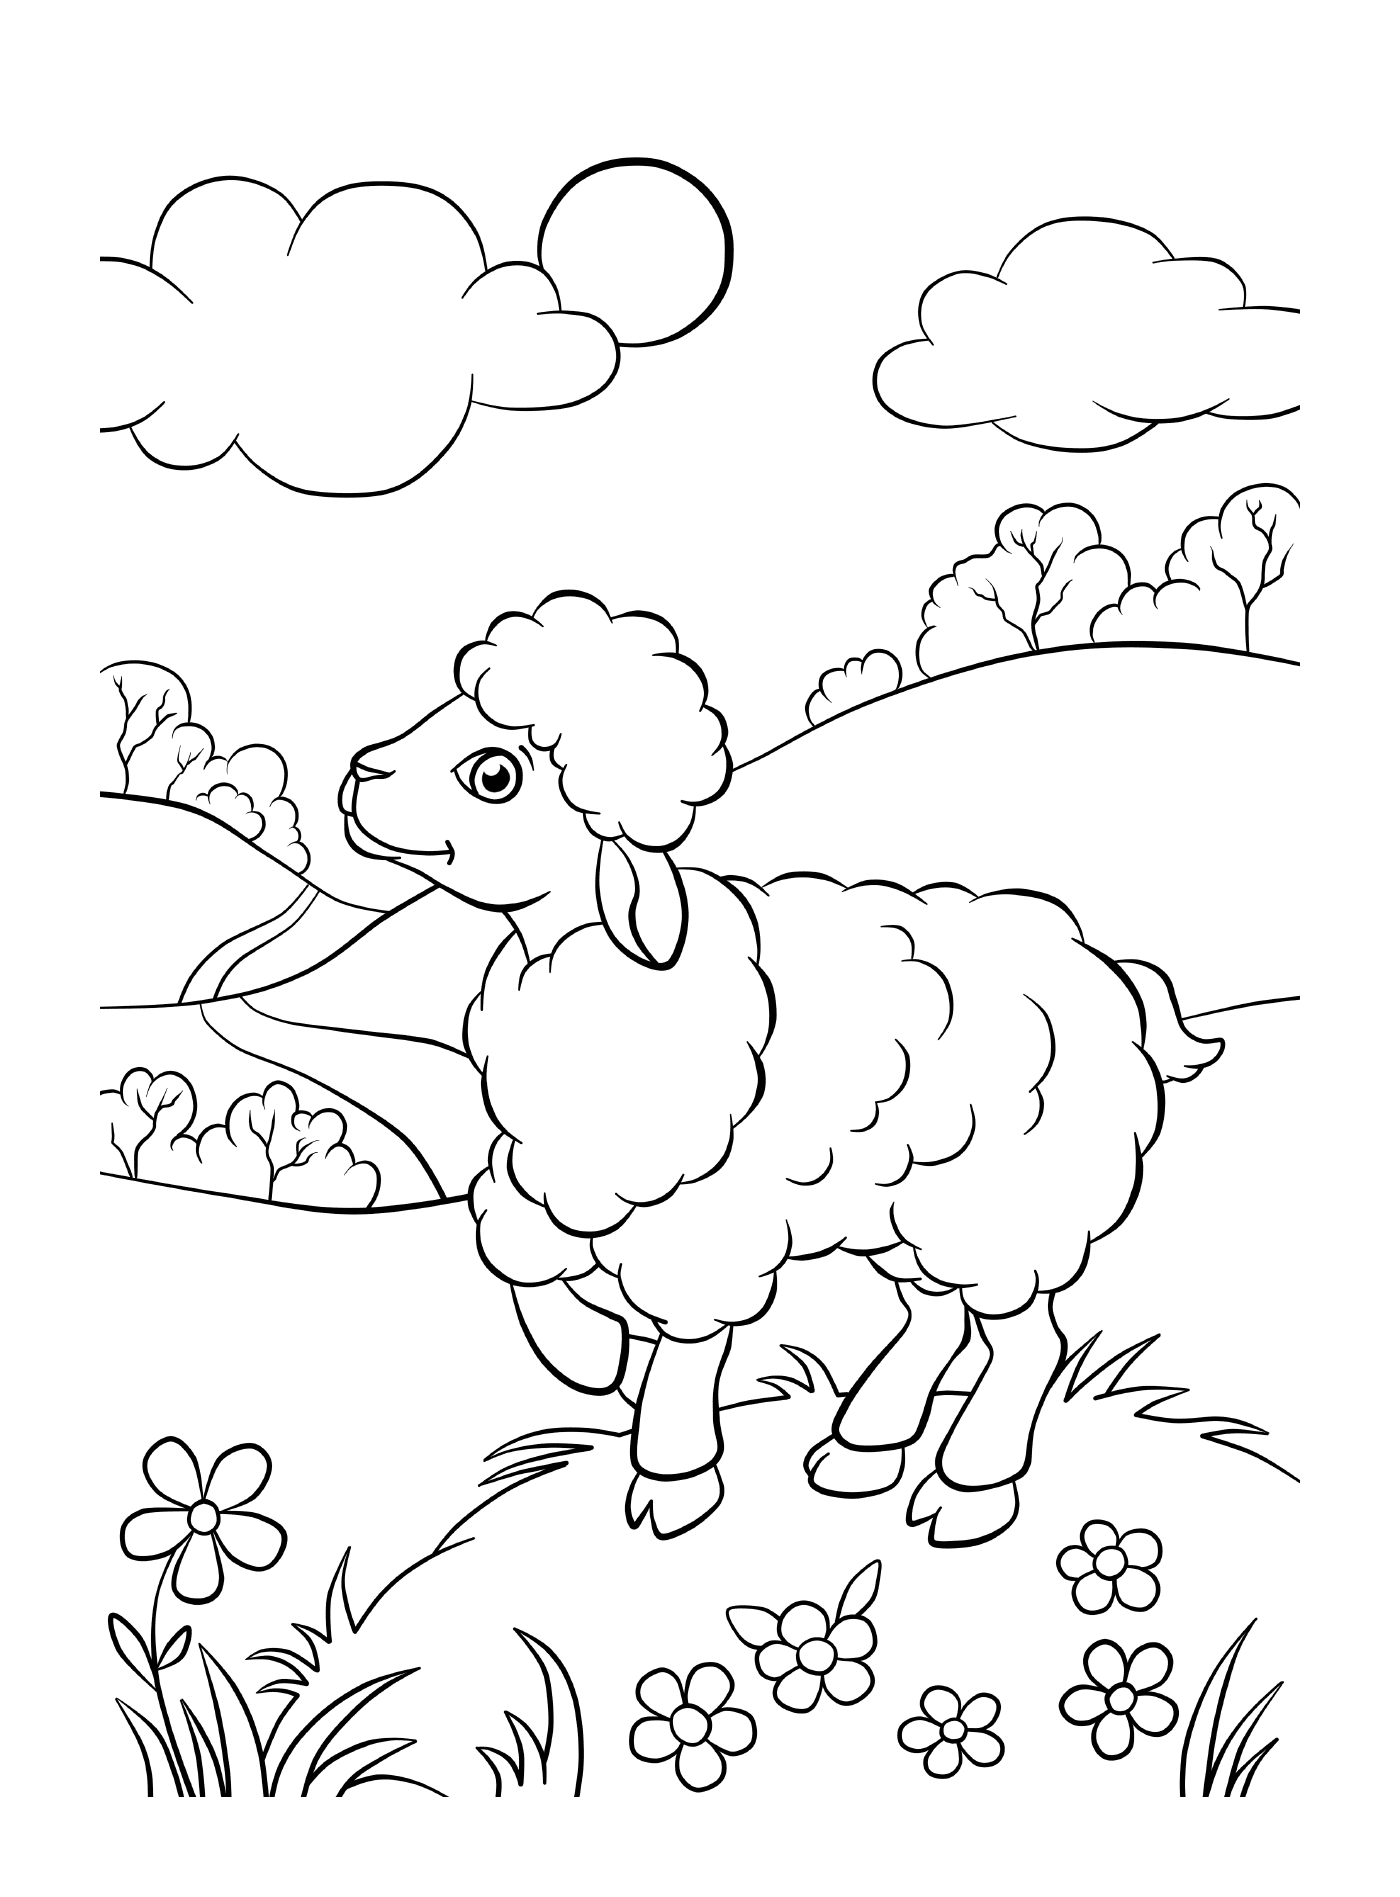   Mouton dans champs verdoyants 